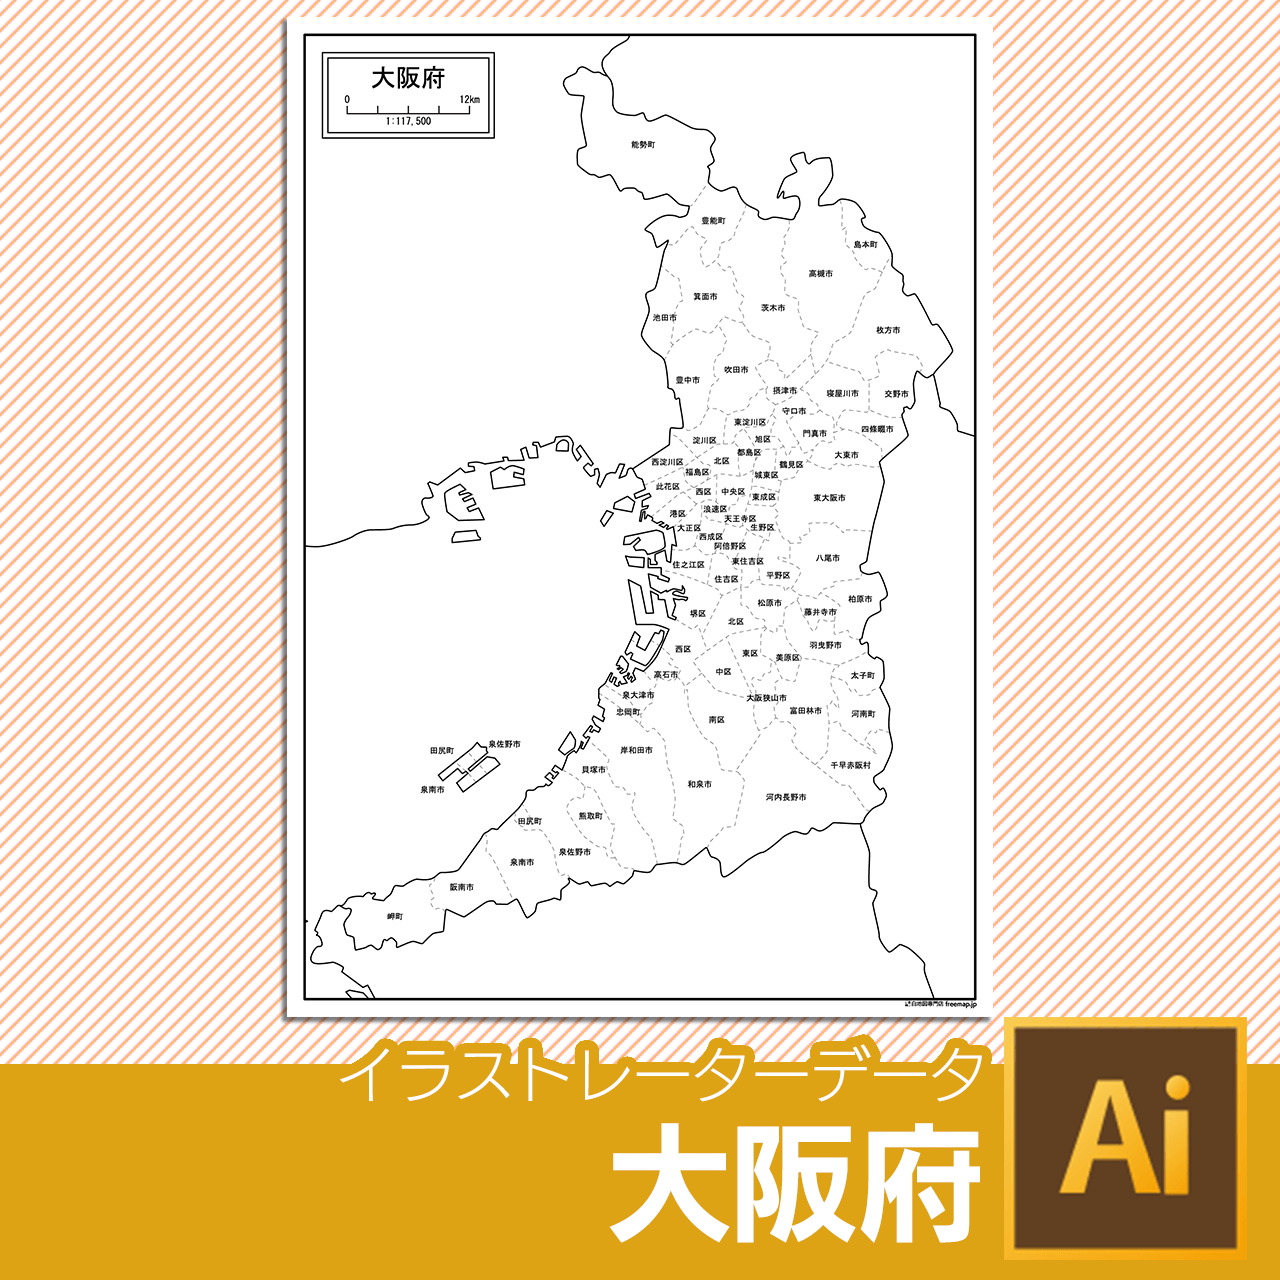 大阪府のaiデータのサムネイル画像